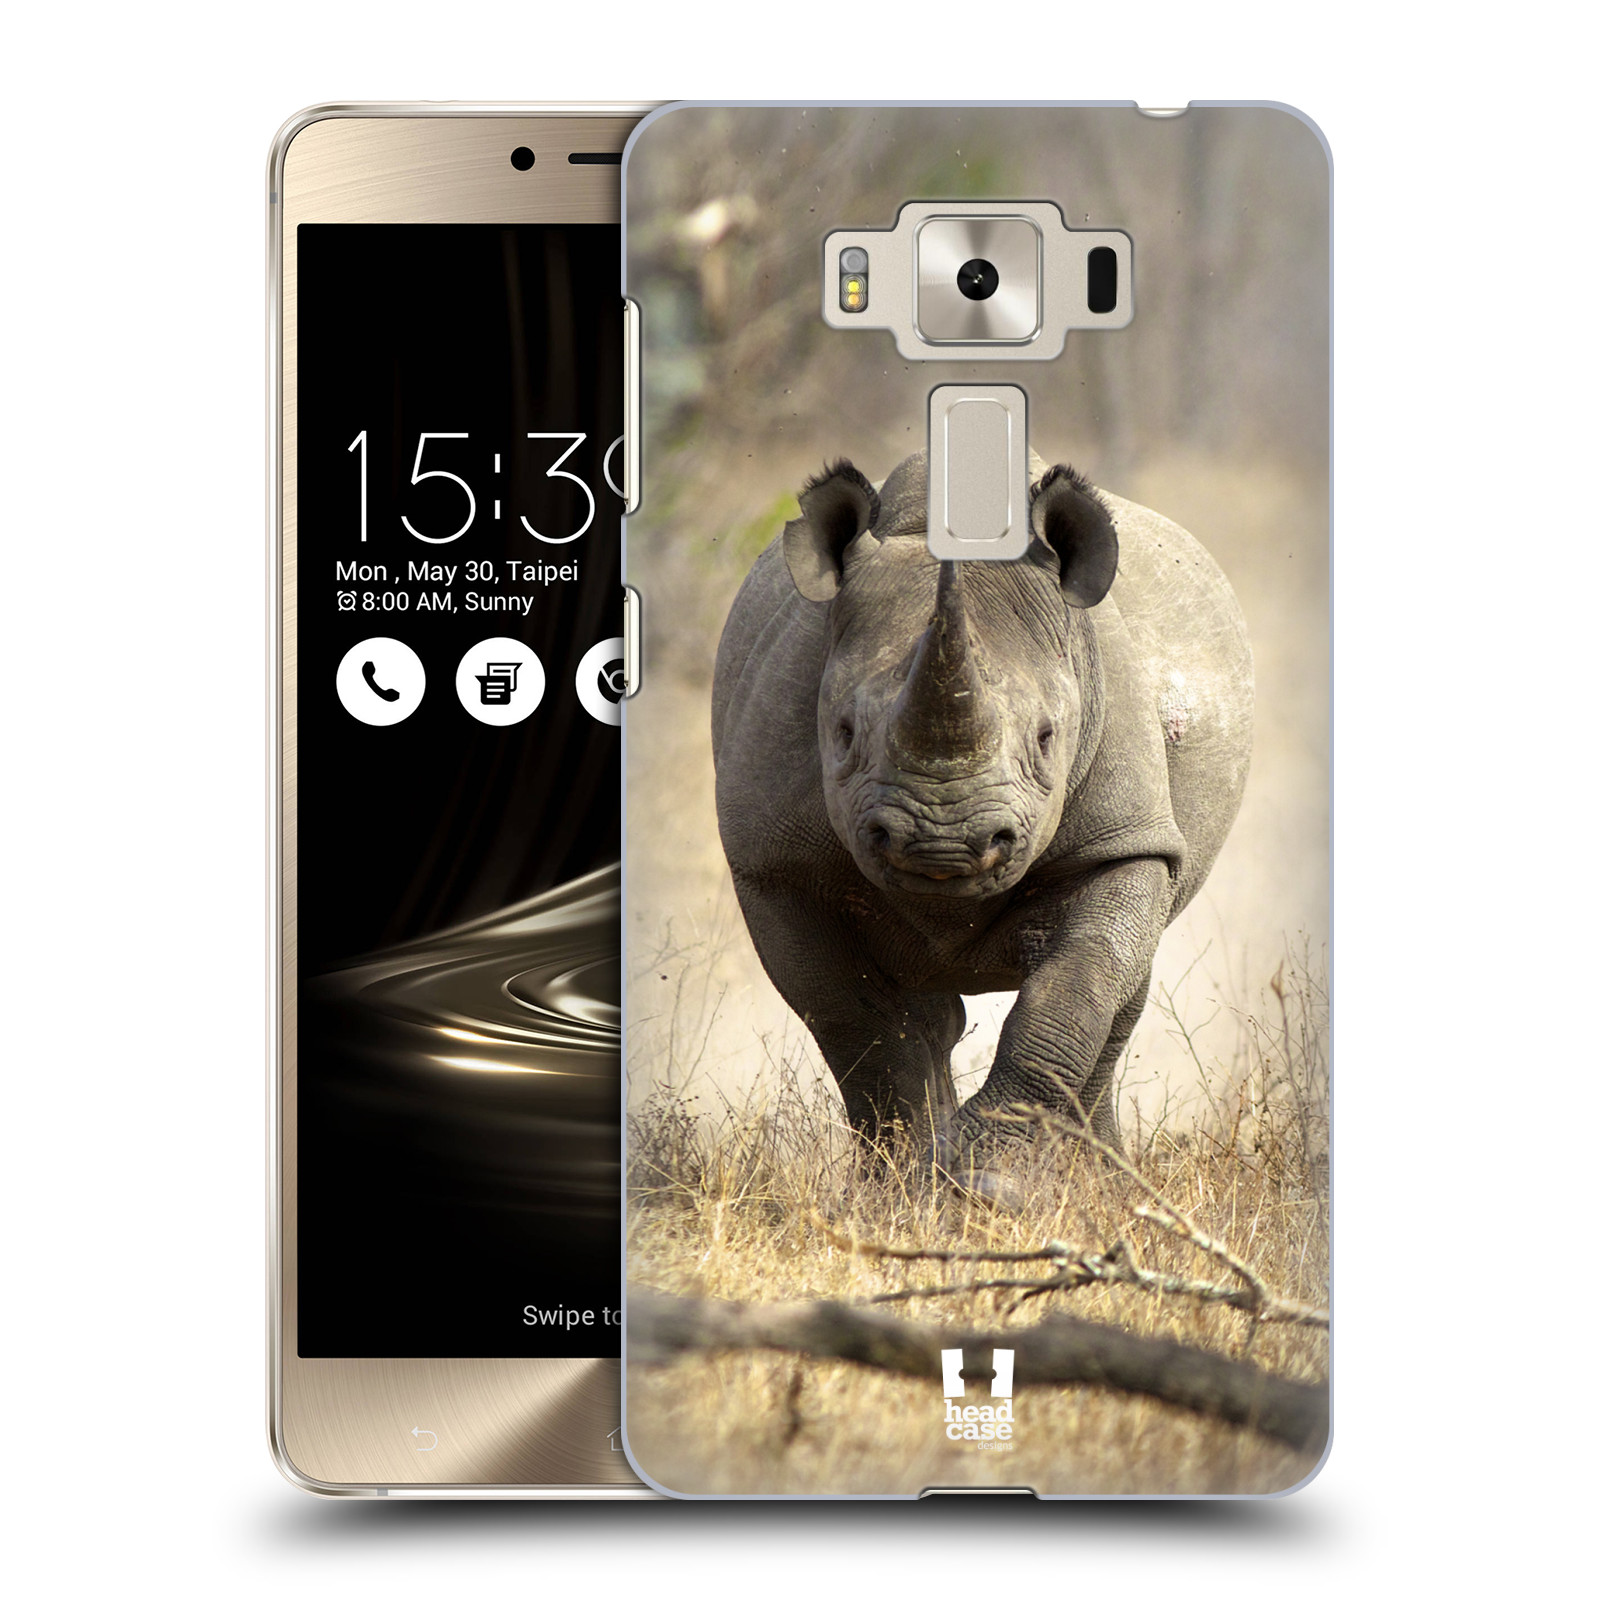 HEAD CASE plastový obal na mobil Asus Zenfone 3 DELUXE ZS550KL vzor Divočina, Divoký život a zvířata foto AFRIKA BĚŽÍCÍ NOSOROŽEC